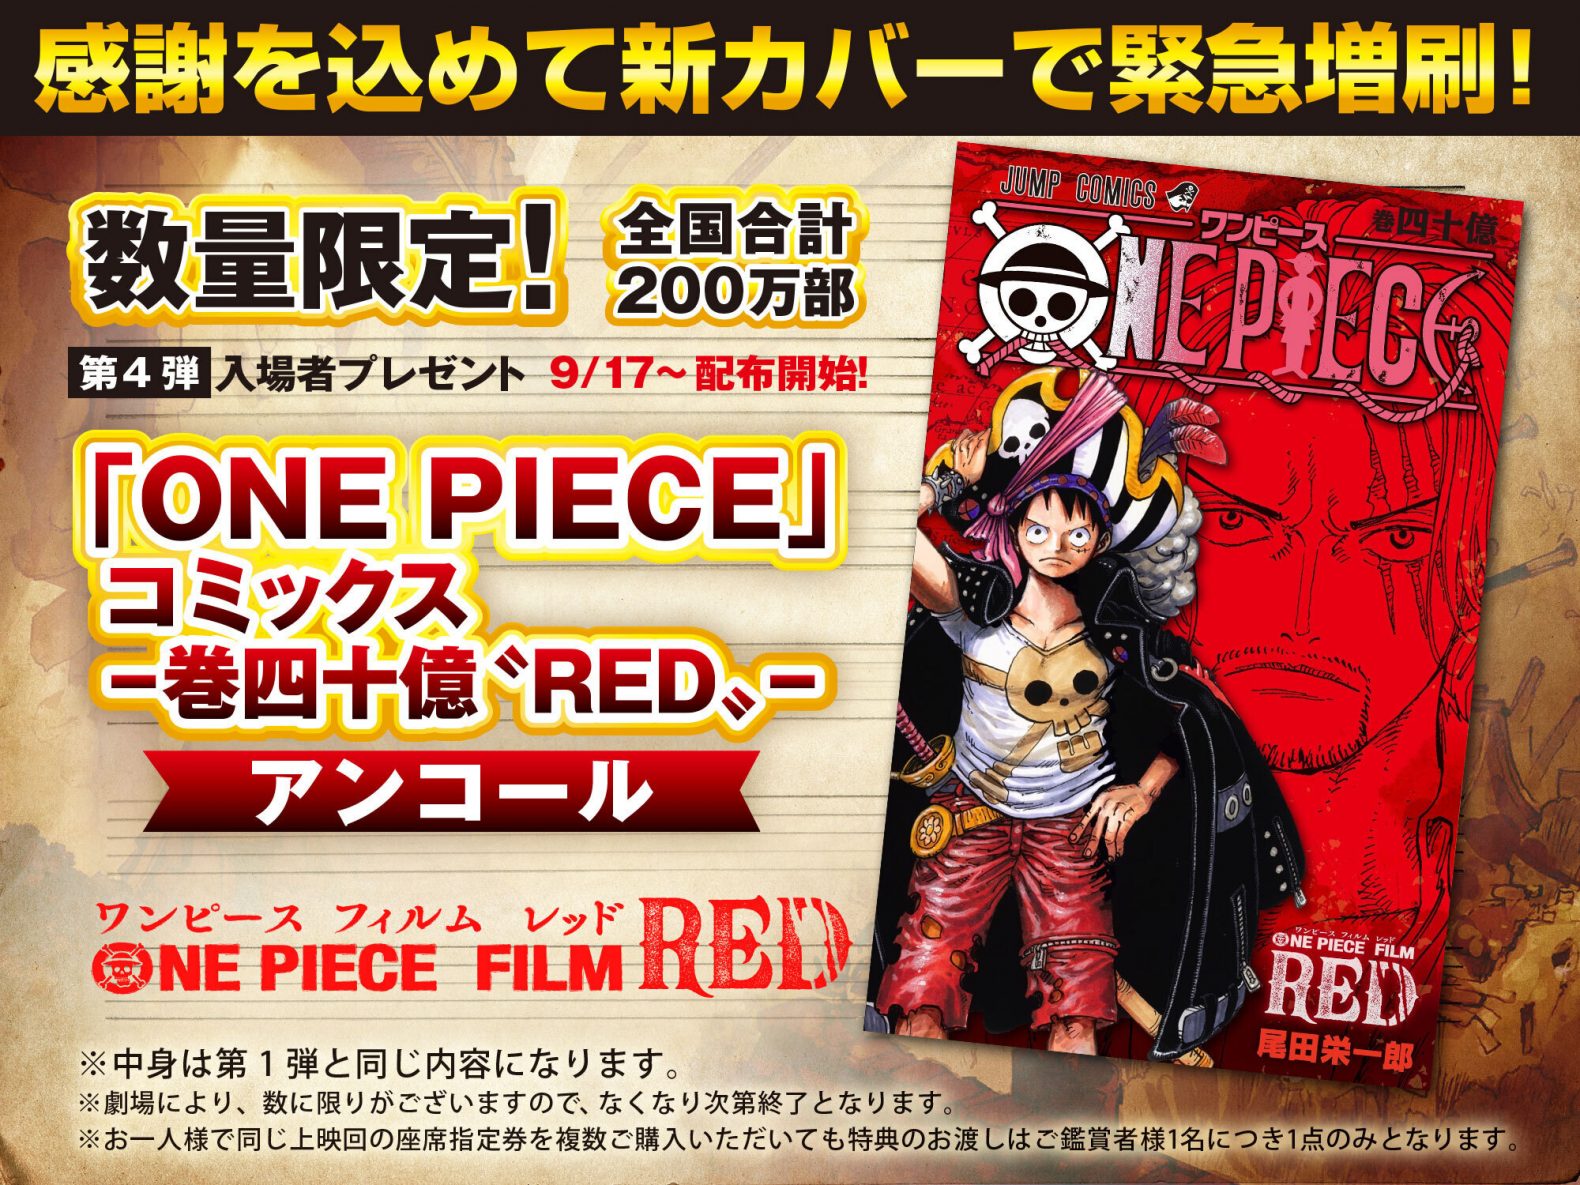 第4弾入場者プレゼント One Piece コミックス 巻四十億 Red 再配布決定 One Piece Film Red 公式サイト